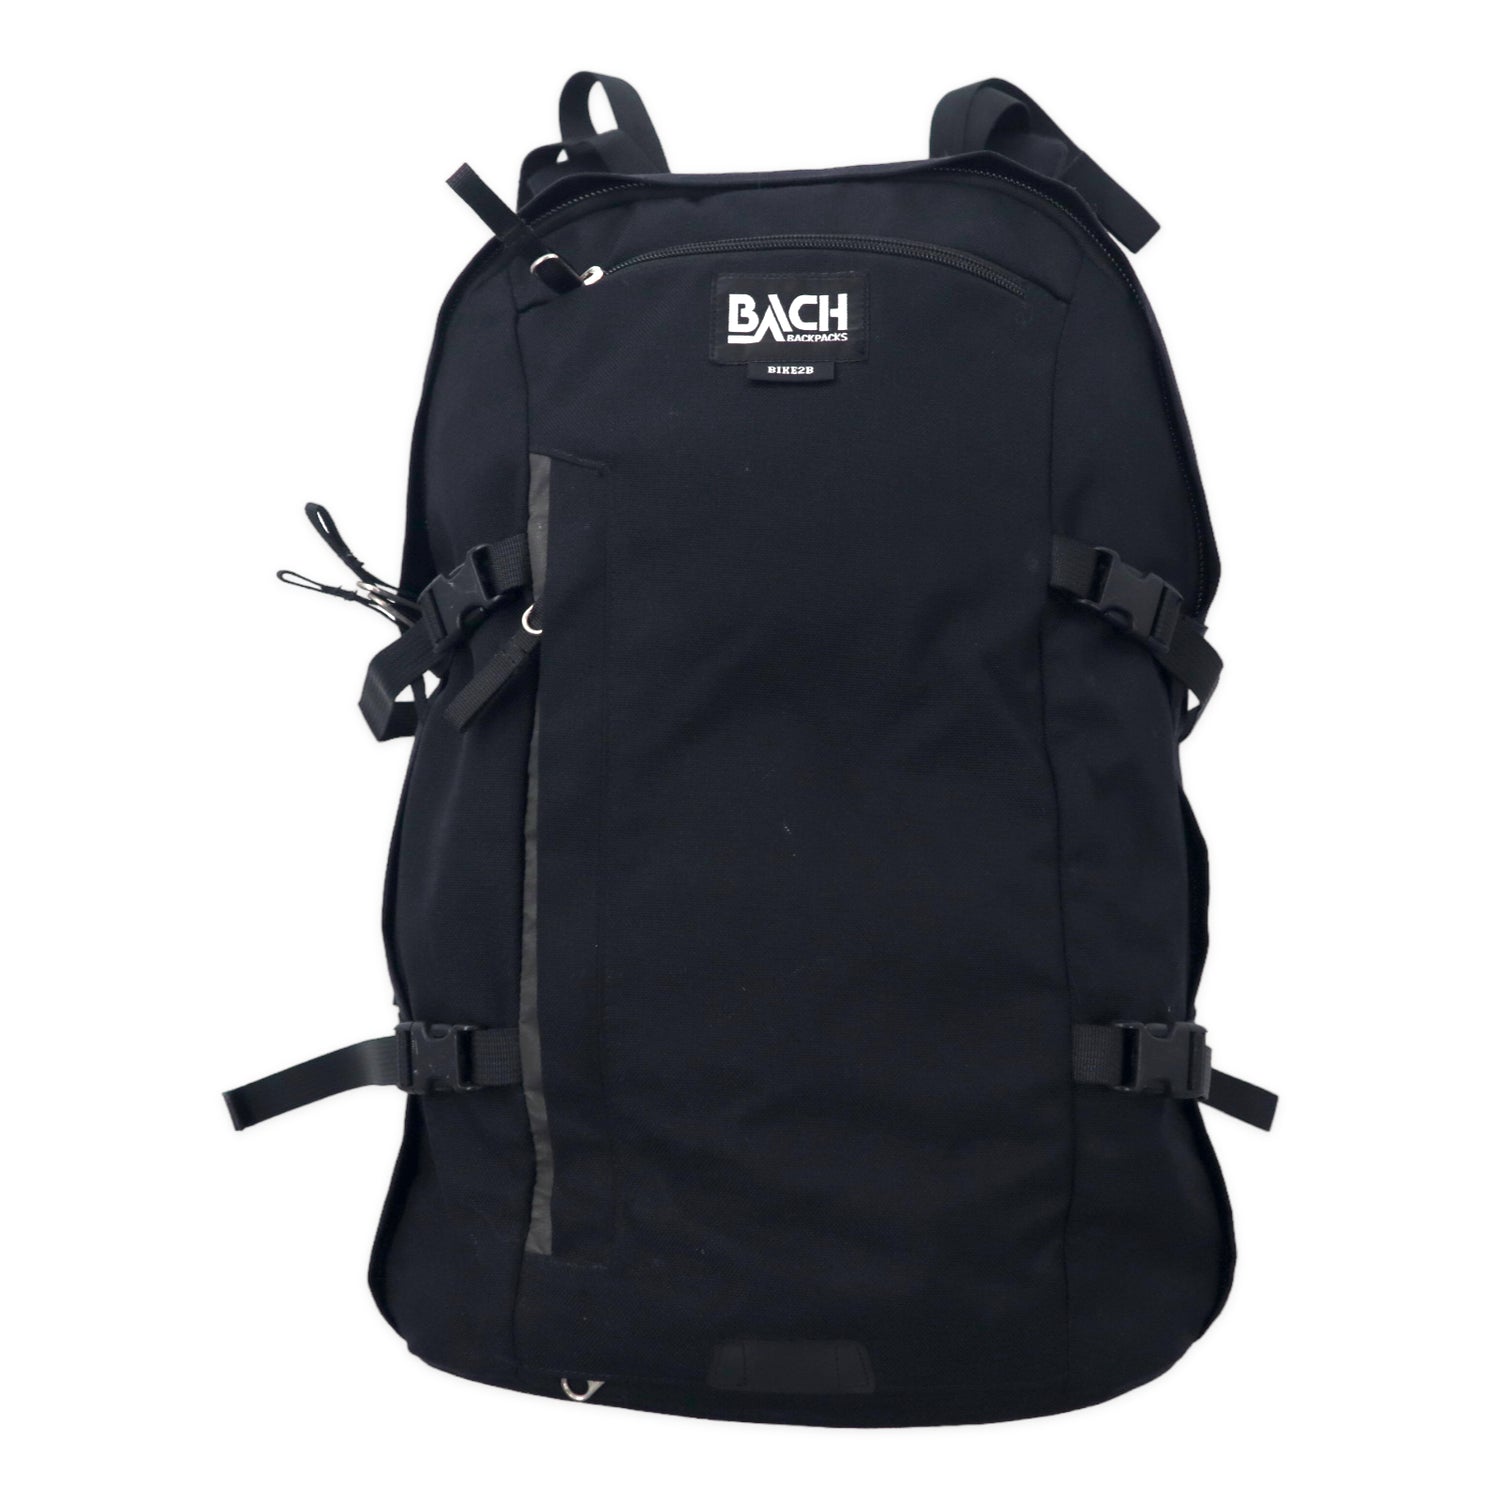 BACH Backpack Rucksack BIKE 2B 30 Black PC Sleeve Cordura Nylon ...